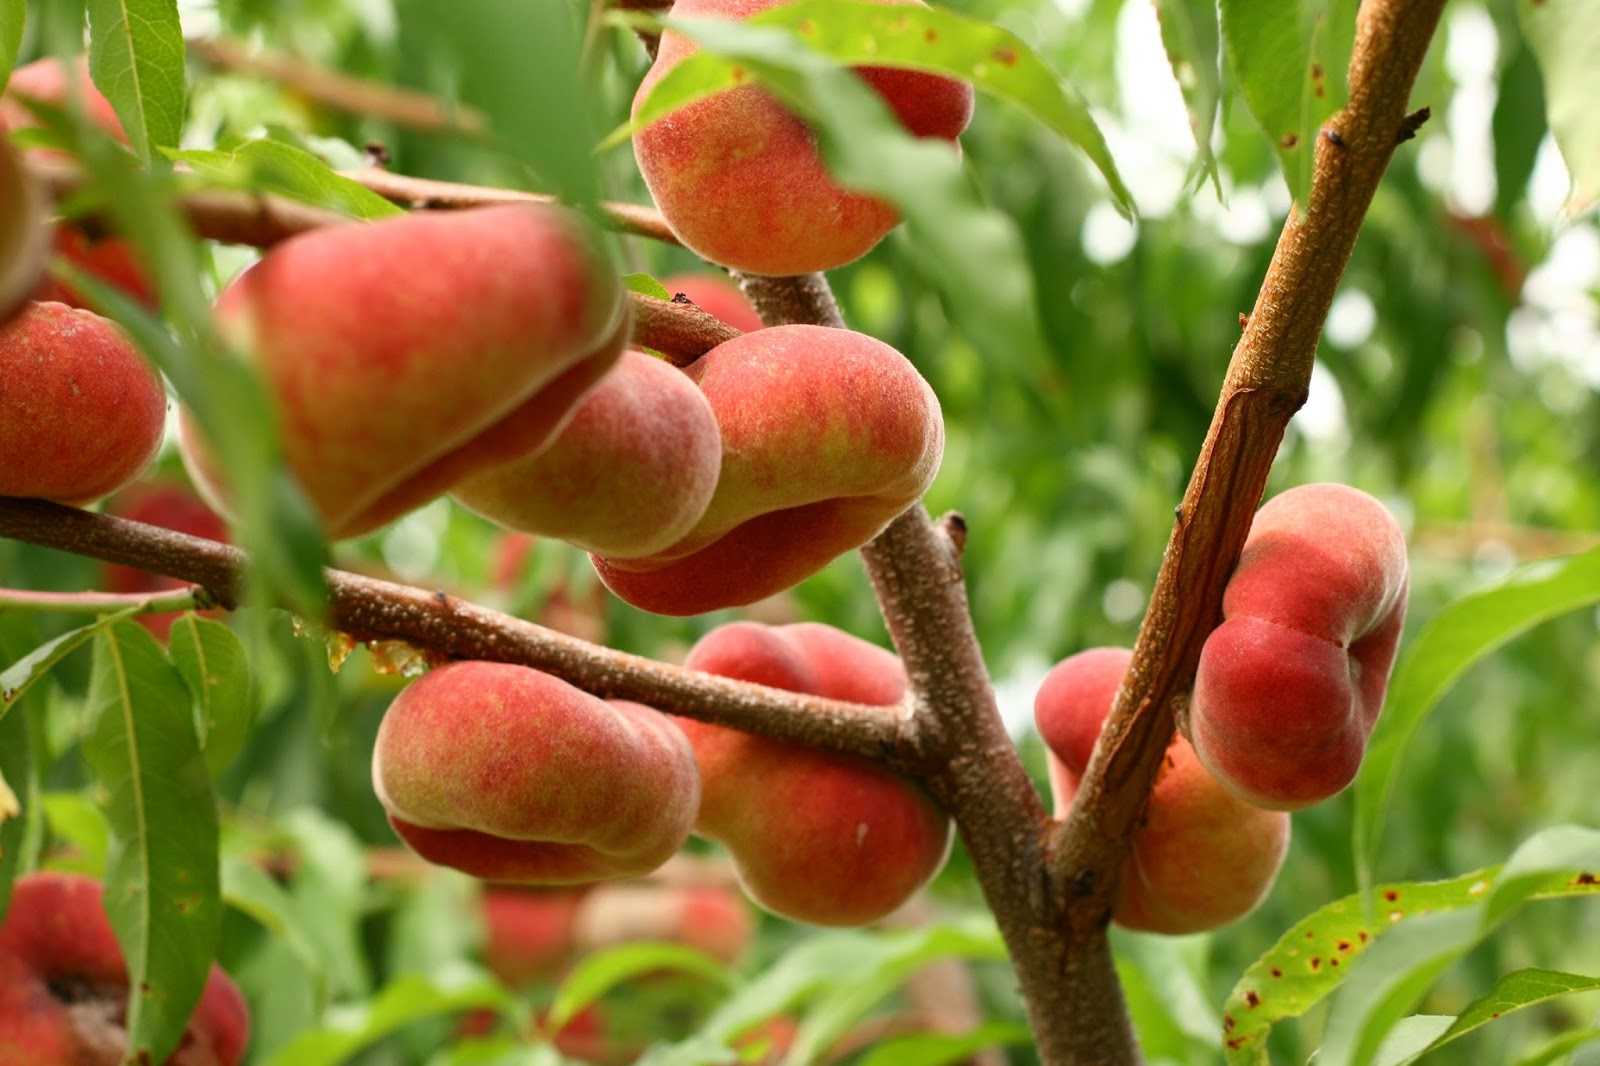 Персик: как выглядит персиковое дерево, где растет и когда плодоносит, описание плодов и цветов, а также сорта, выращиваемые в россии